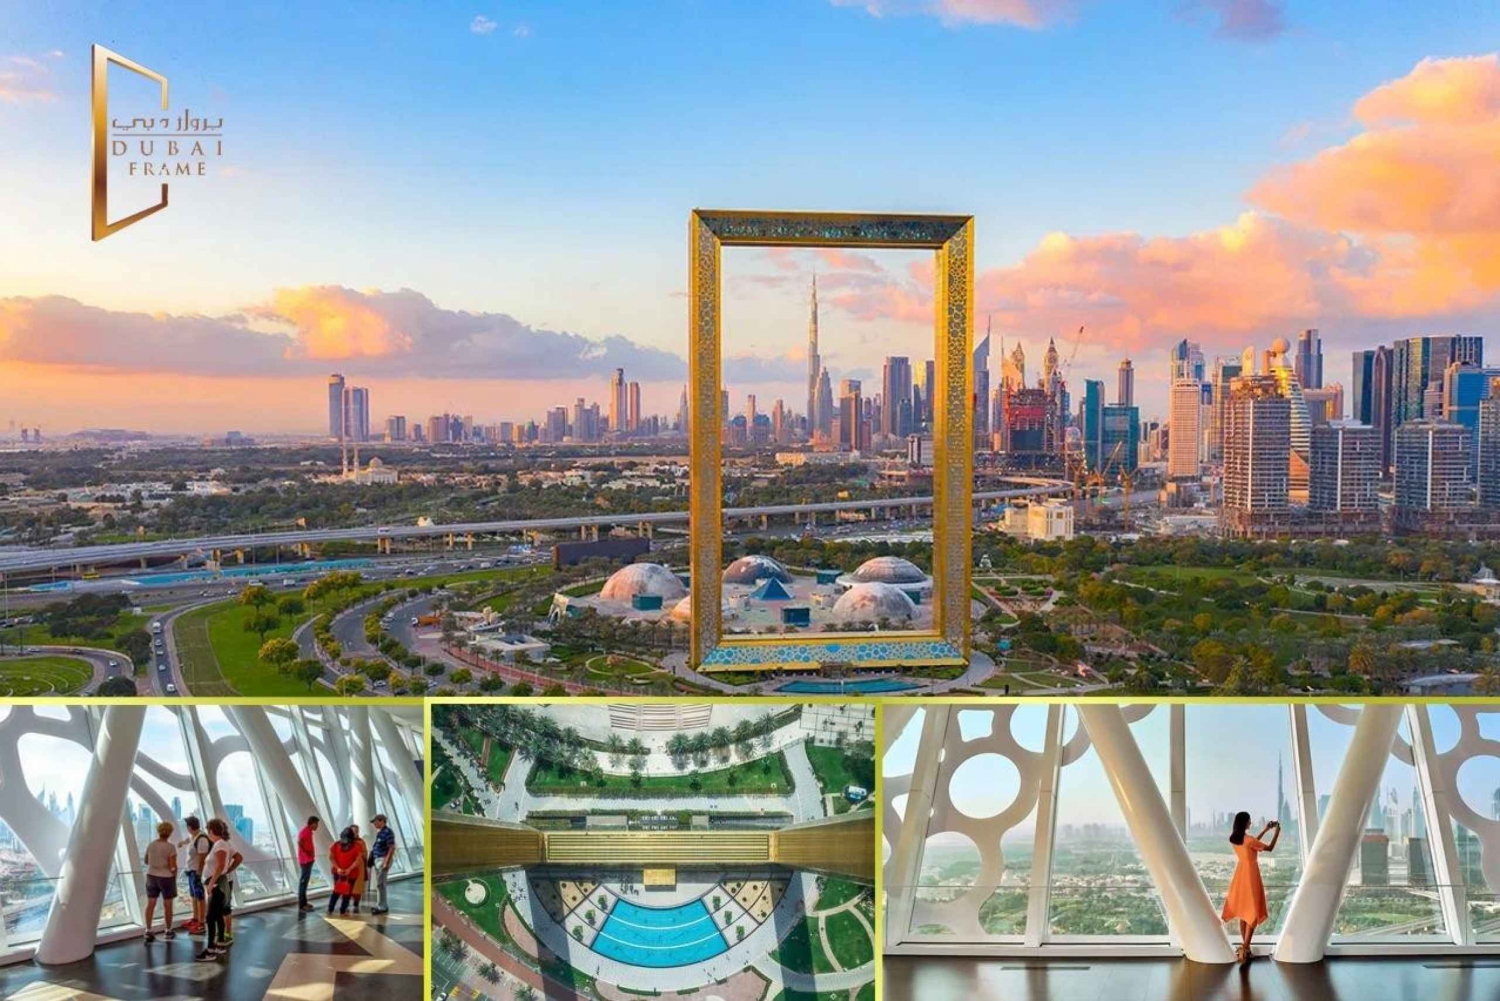 Byrundtur fra Dubai lufthavn for transittpassasjerer